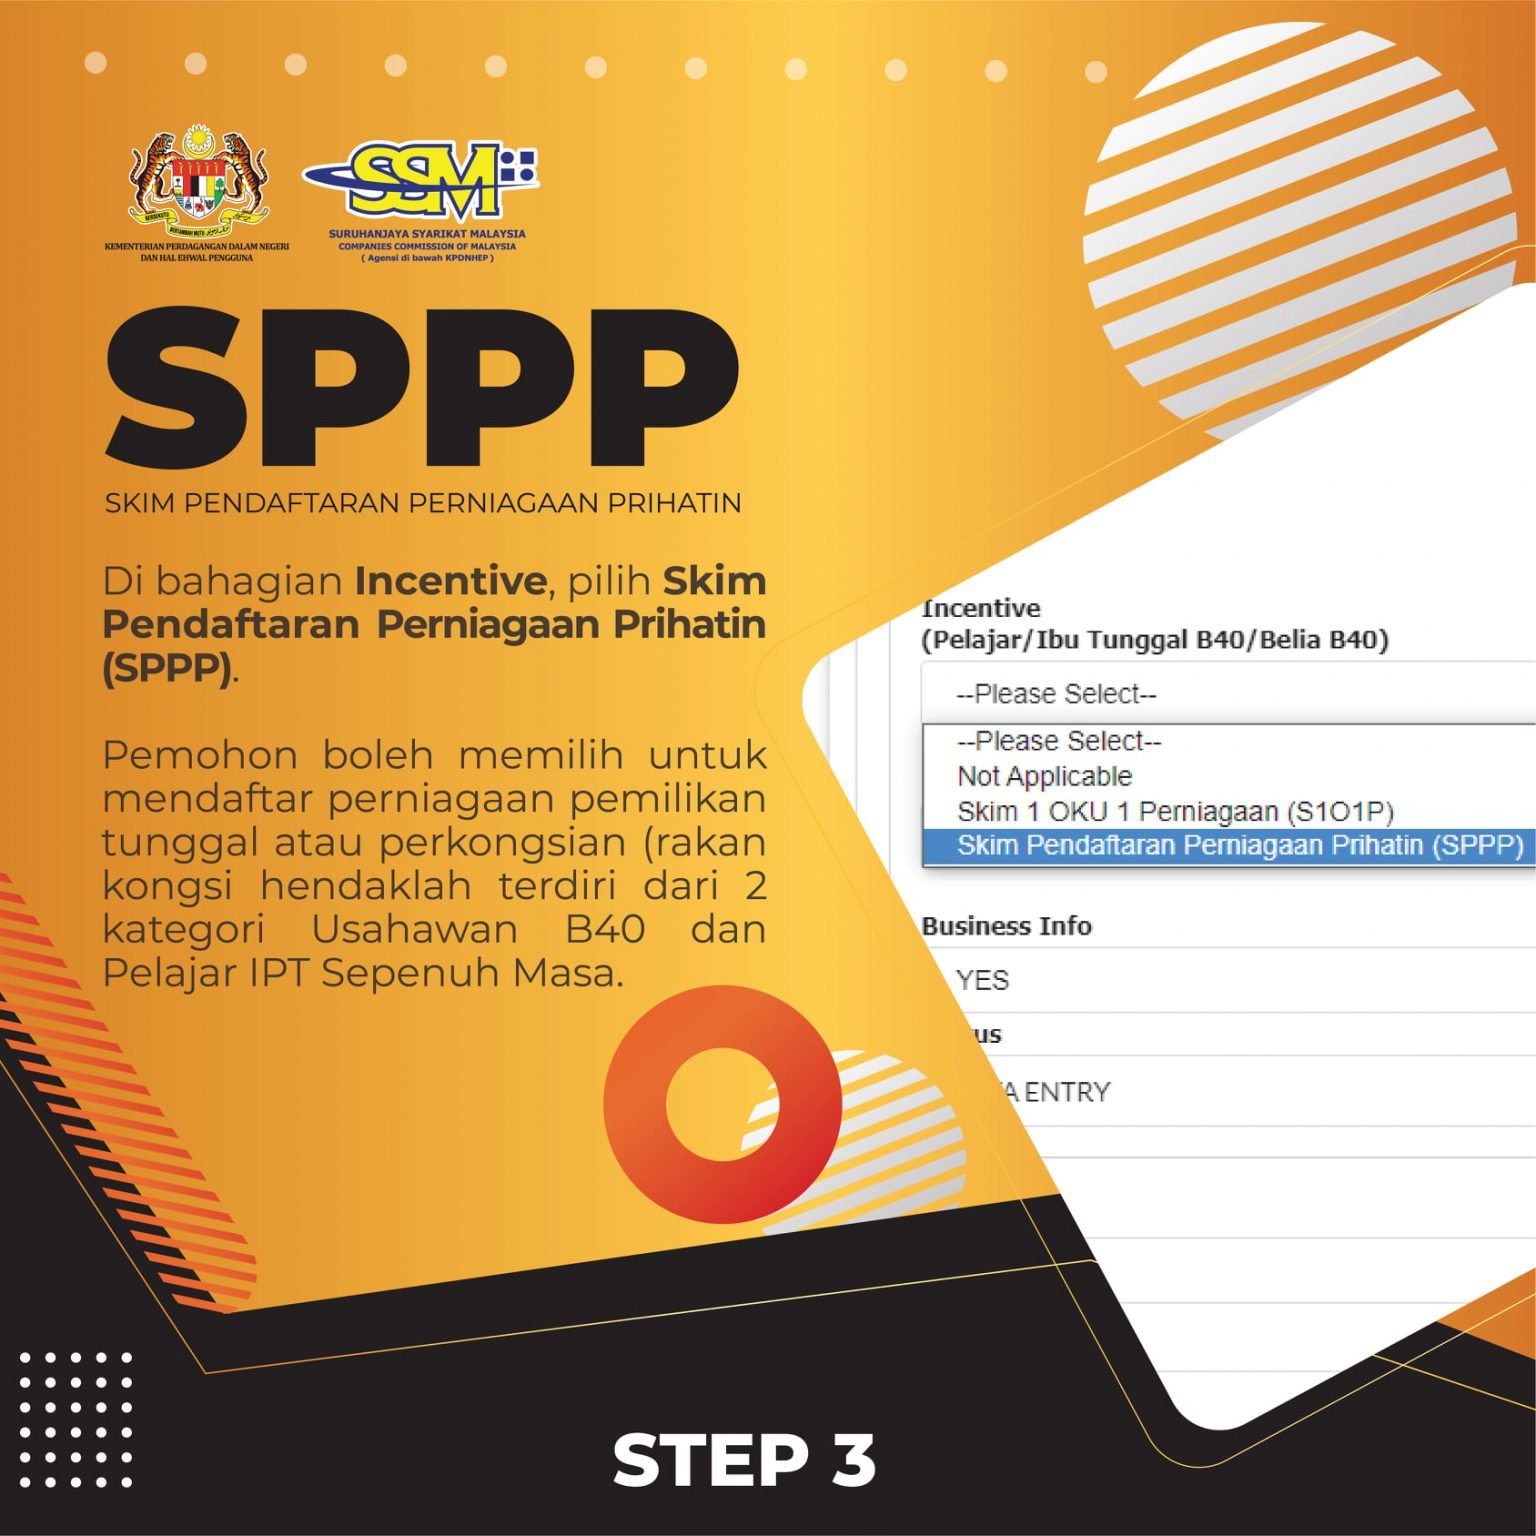 SPPP SSM Panduan Pendaftaran SSM Percuma Untuk B40 & Pelajar